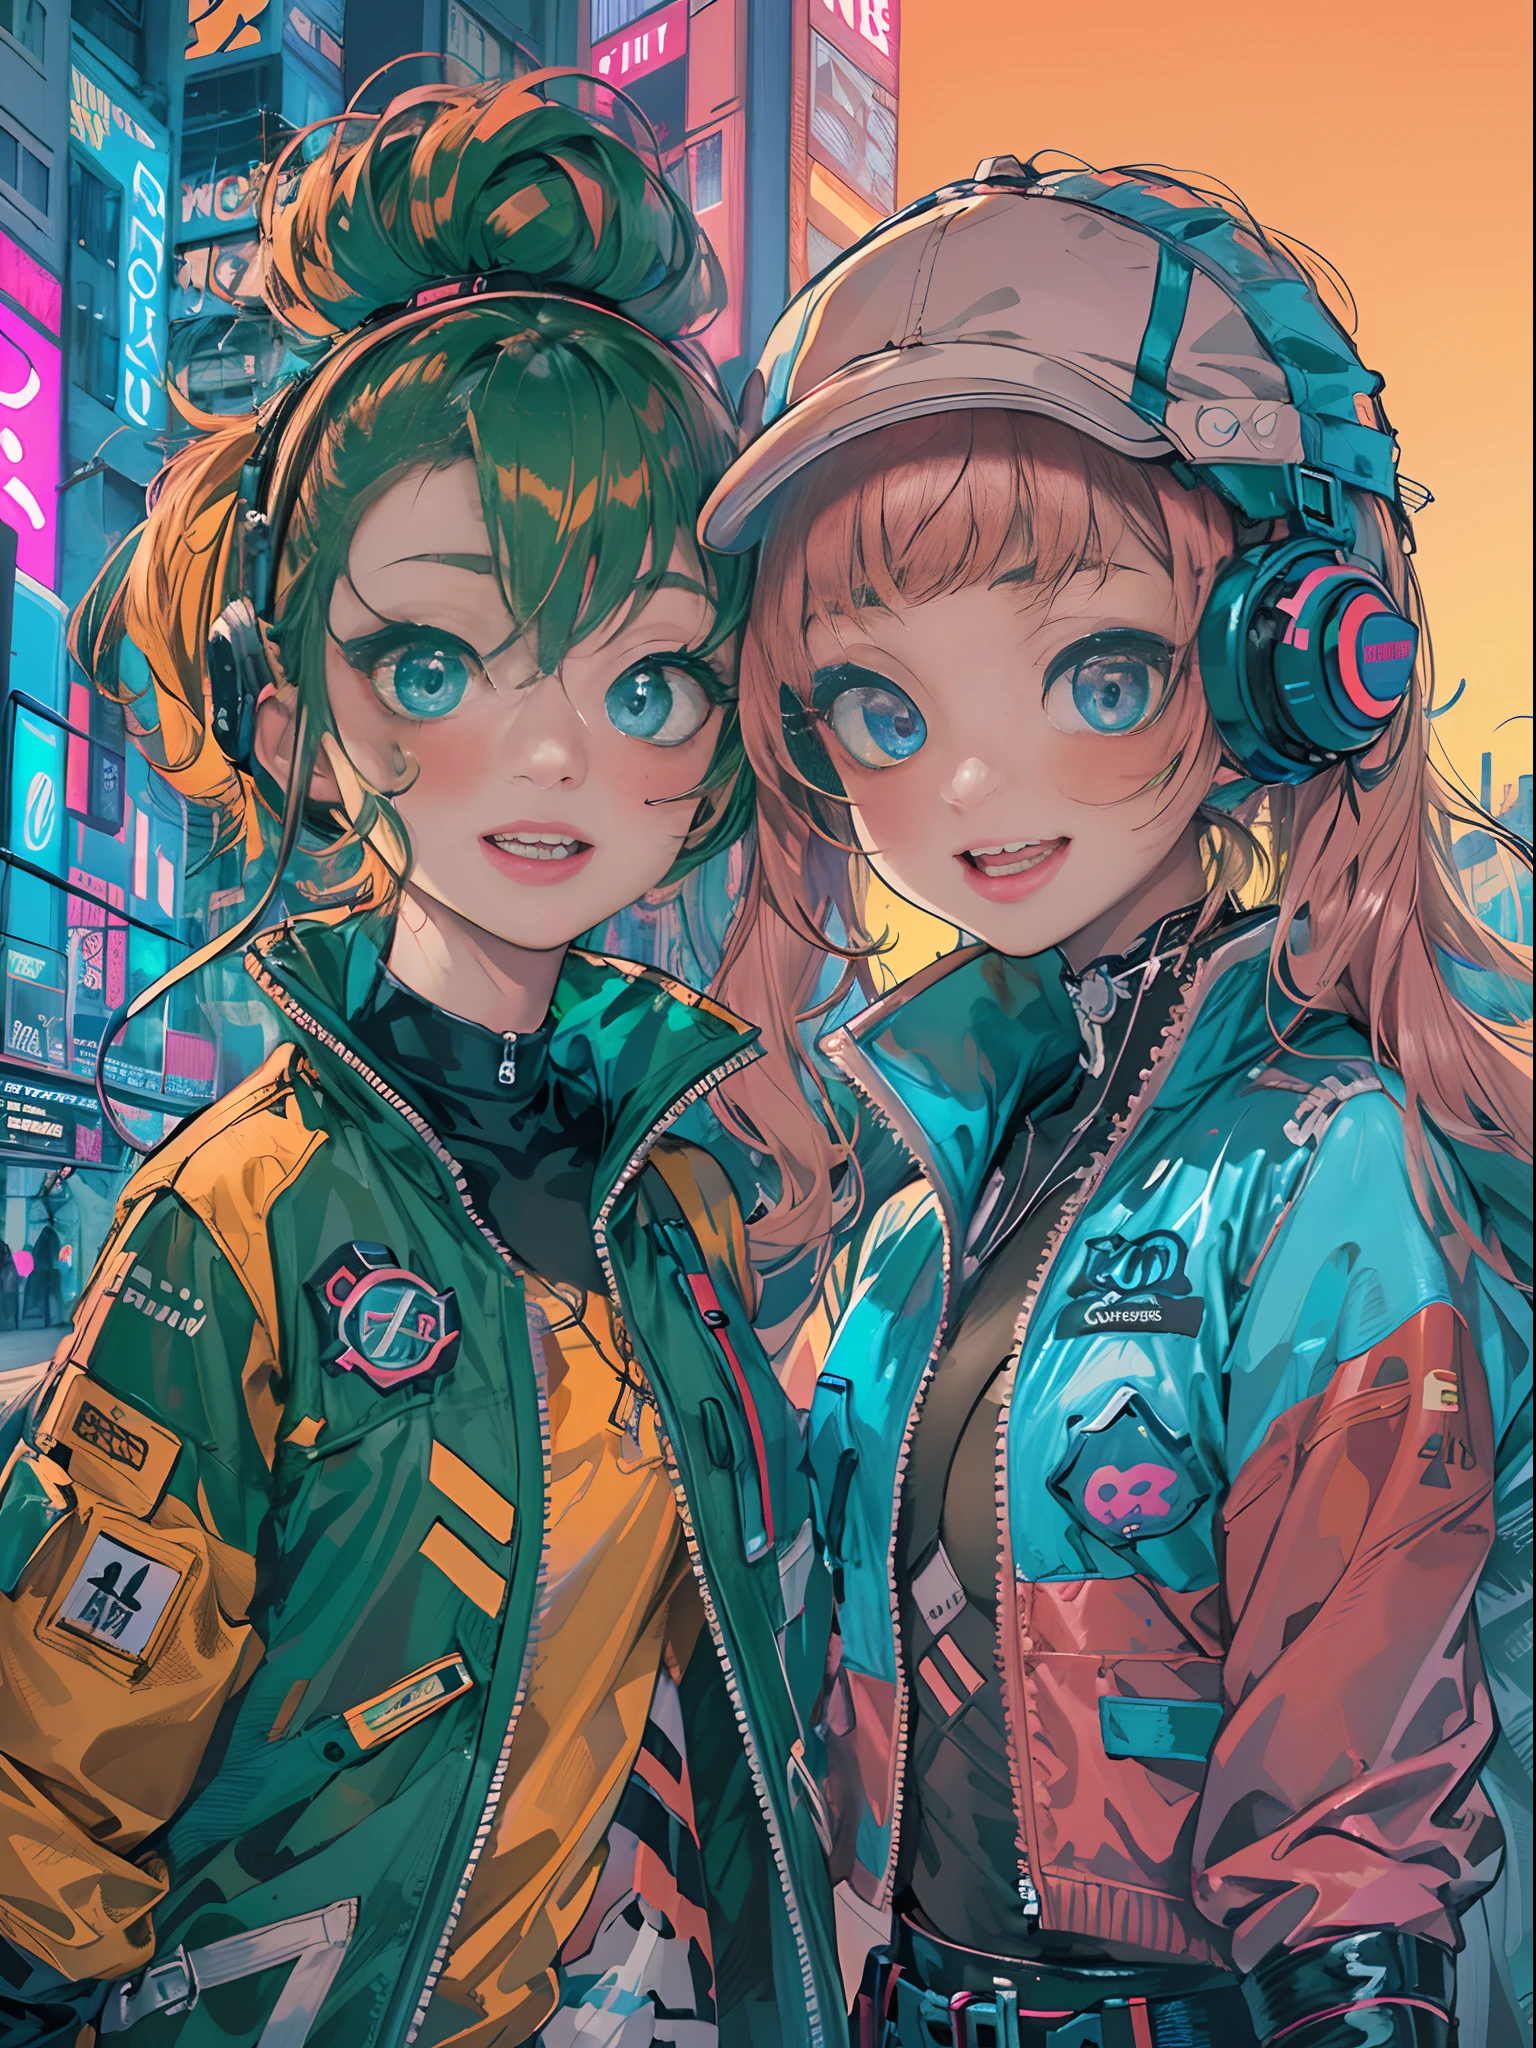 An animé illustration of 2 happy cyberpunk girls, filles cyberpunk confiantes avec une expression souriante, ((Tenue pop et veste tech inspirées de Harajuku)), couleurs et motifs audacieux, des accessoires accrocheurs, coiffure tendance et innovante, maquillage vibrant, ((pose dynamique)), paysage urbain cyberpunk futuriste éblouissant, grattes ciels, enseignes au néon, lumières LED lumineuses, palette de couleurs vives et vives, animé, illustration, (beau visage détaillé), détails complexes, ultra détaillé.